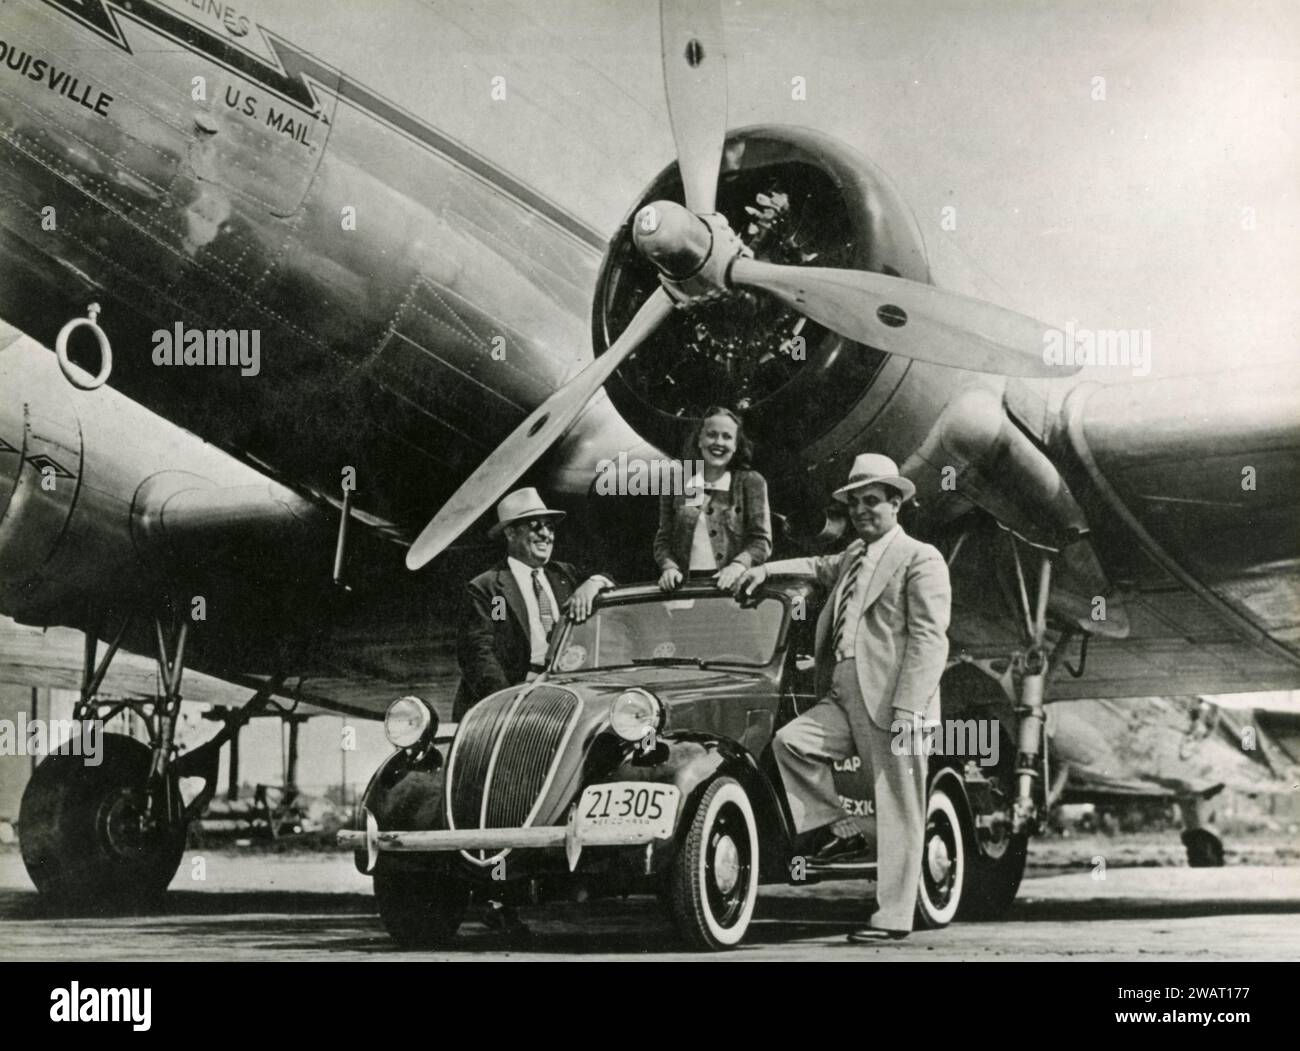 FIAT 500 Topolino accanto a un aereo US mail American Airlines in fuga, USA 1930s Foto Stock